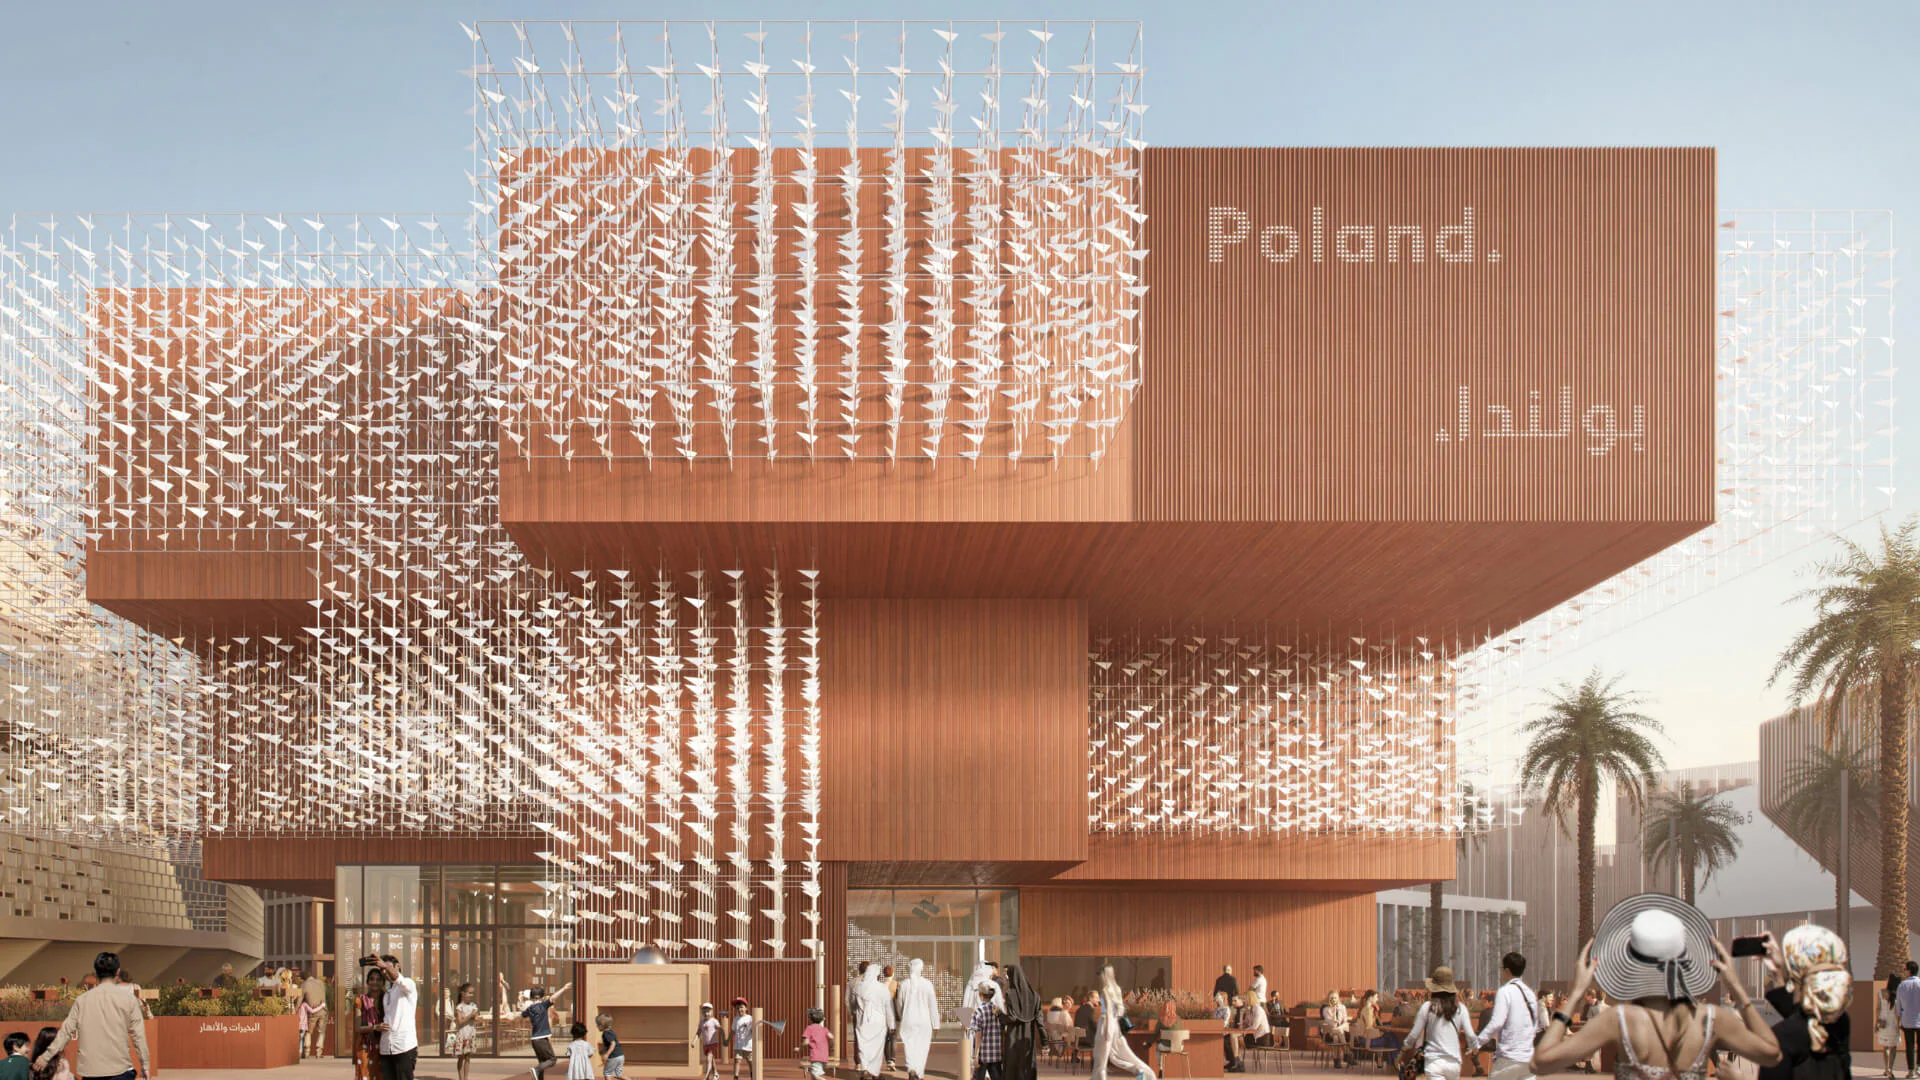 Obrazek dekoracyjny - polski pawilon na Expo 2020